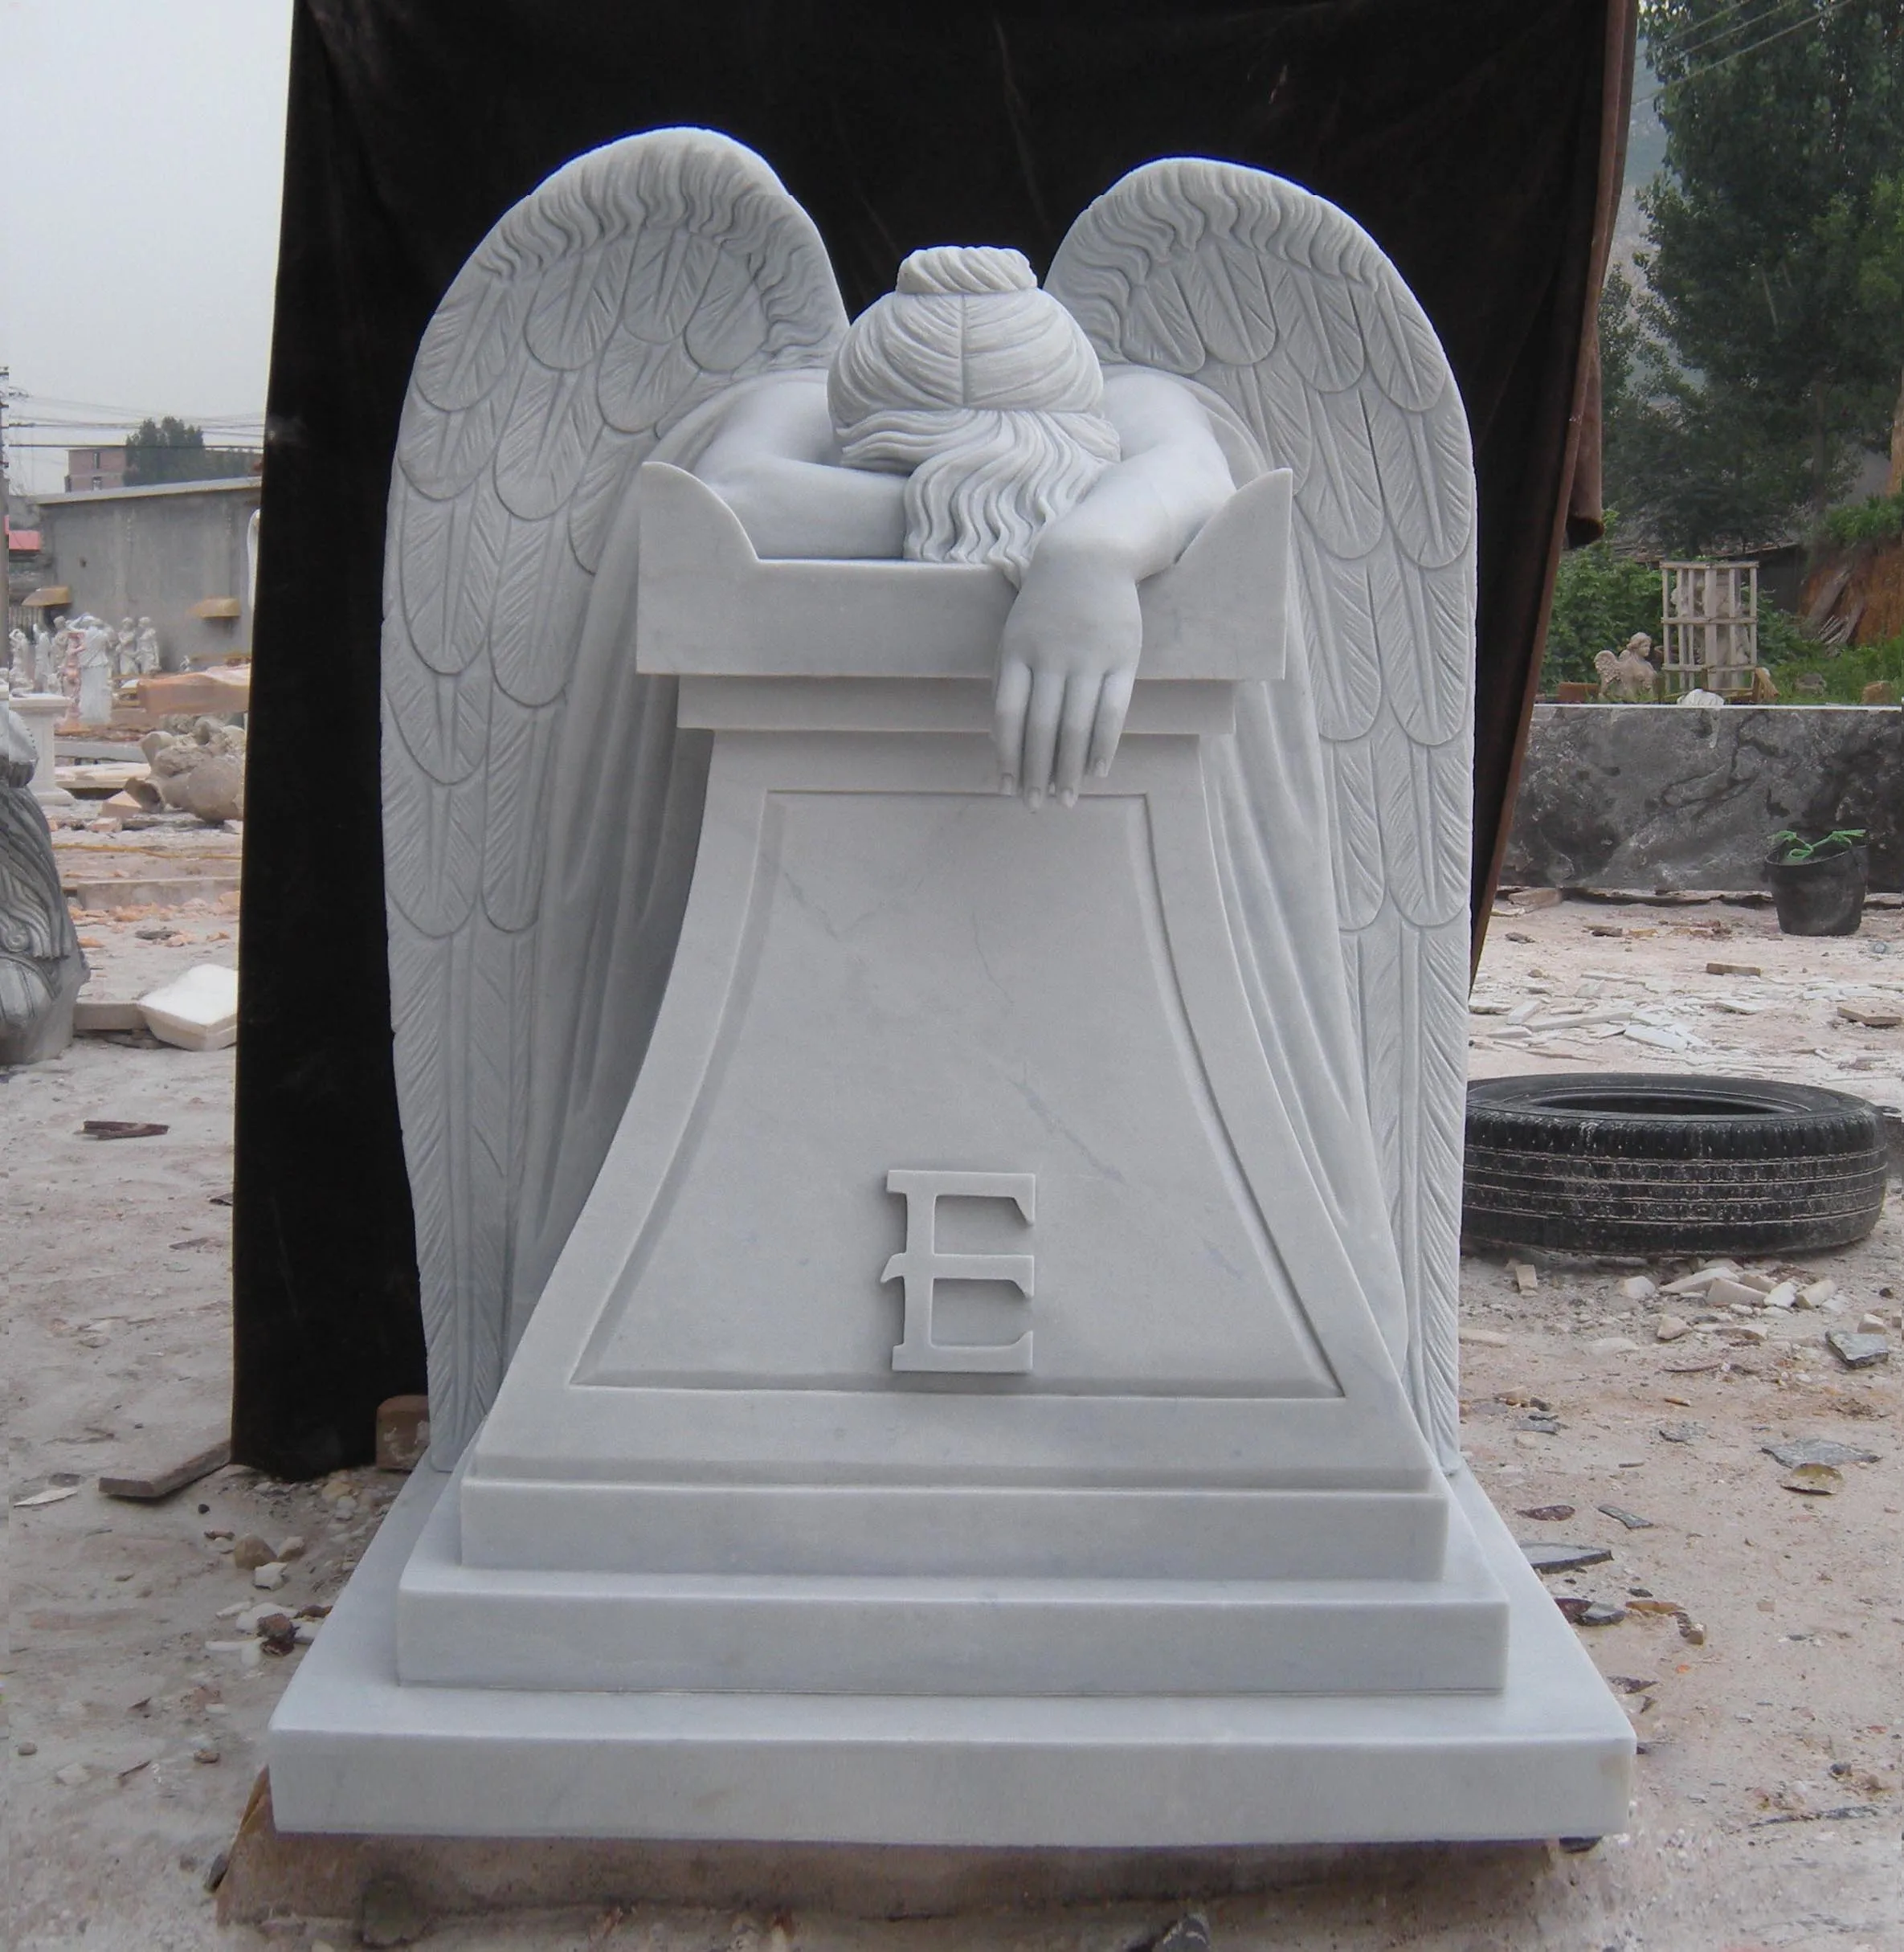 墓地の装飾は等身大の大理石の泣く天使の像を使用します Buy 等身大大理石泣い天使像 泣い天使像 大理石泣い天使の像 Product On Alibaba Com